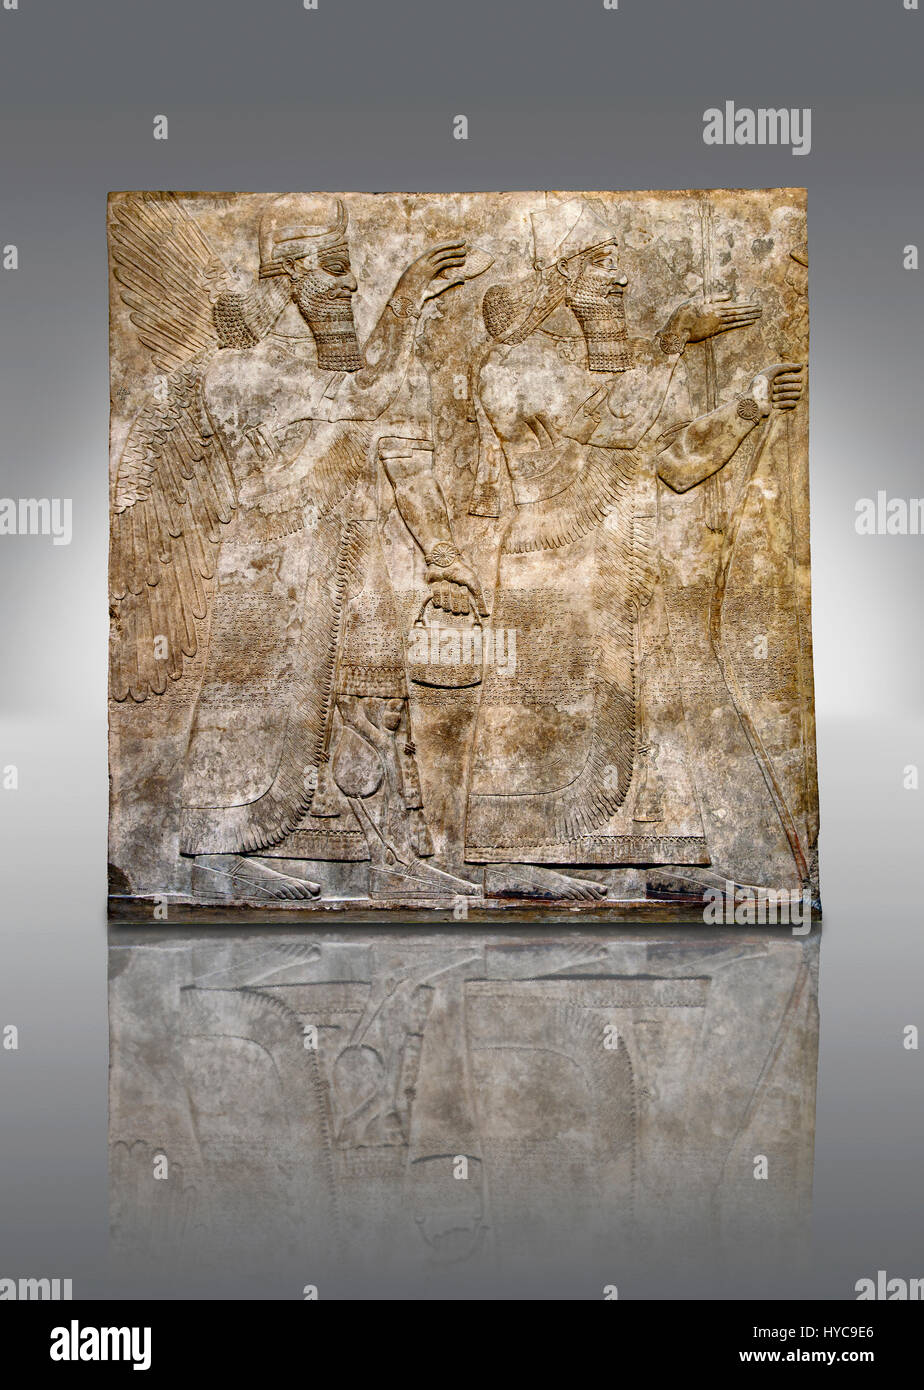 Panel de socorro de la escultura asiria del Rey Ashurnaspiral II, derecho y un espíritu protector alado sosteniendo un balde de agua bendita en una mano y un cono Foto de stock